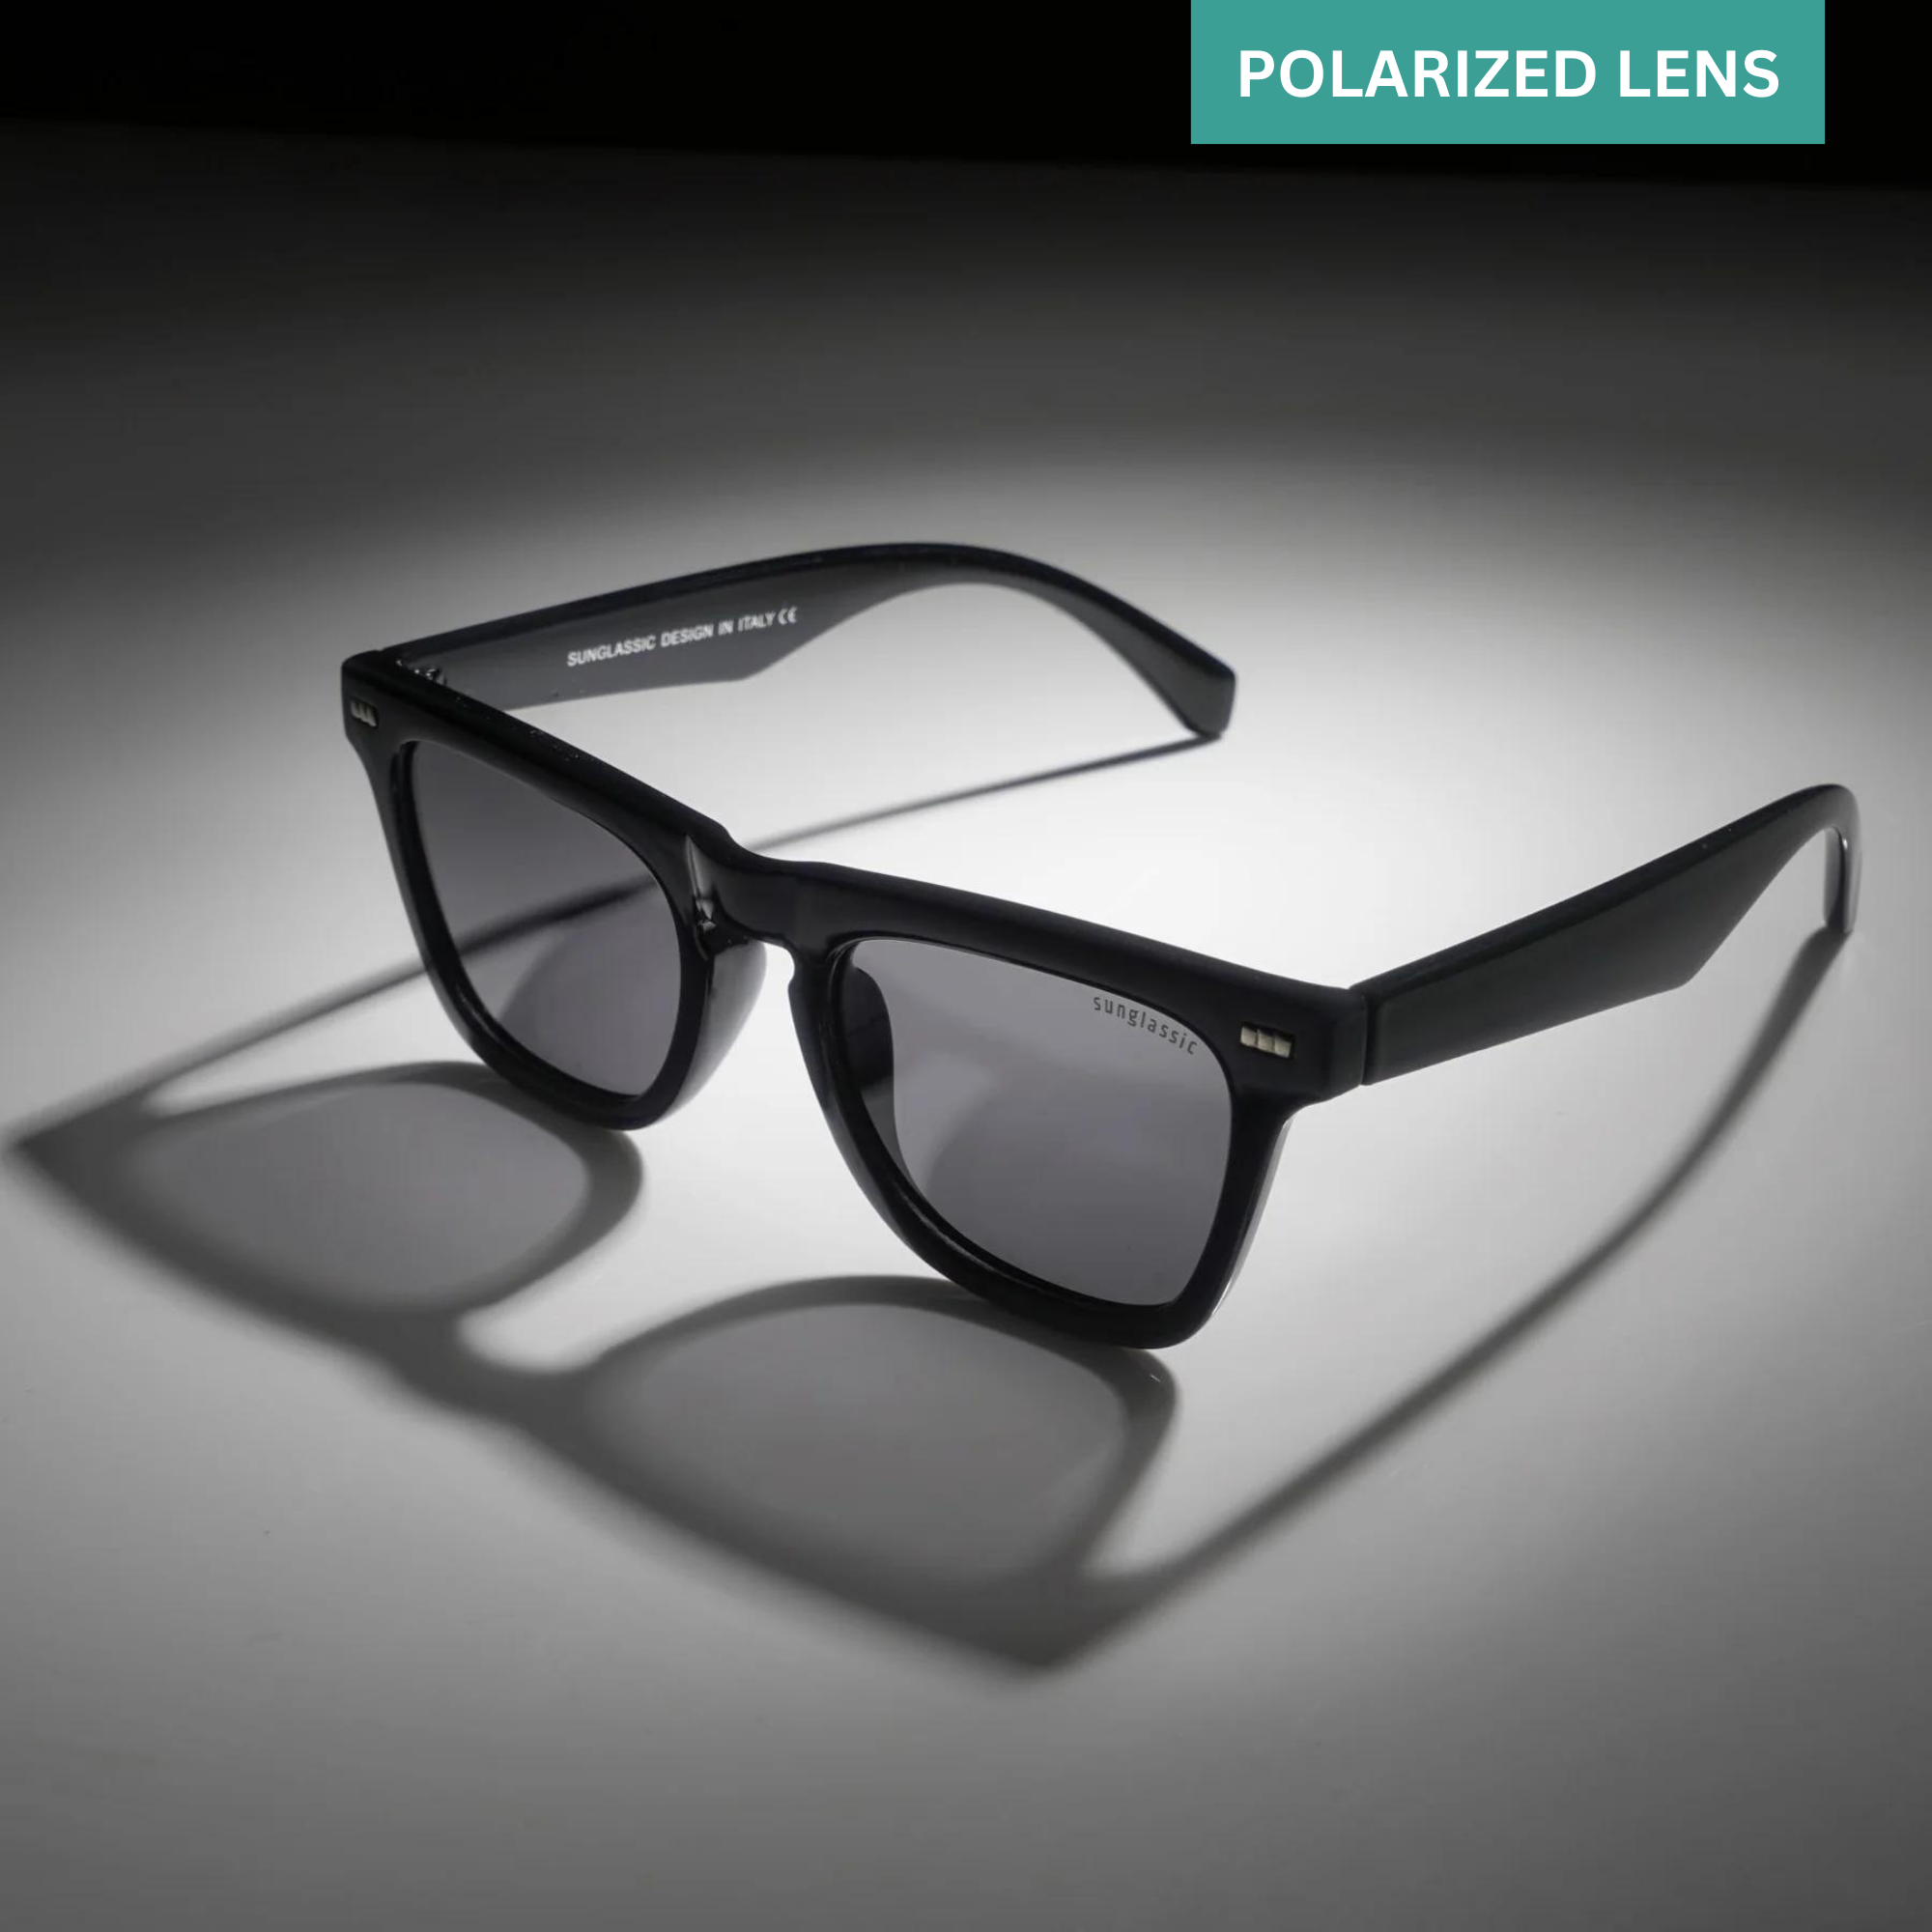 Peter Polarized Black Square Sunglasses